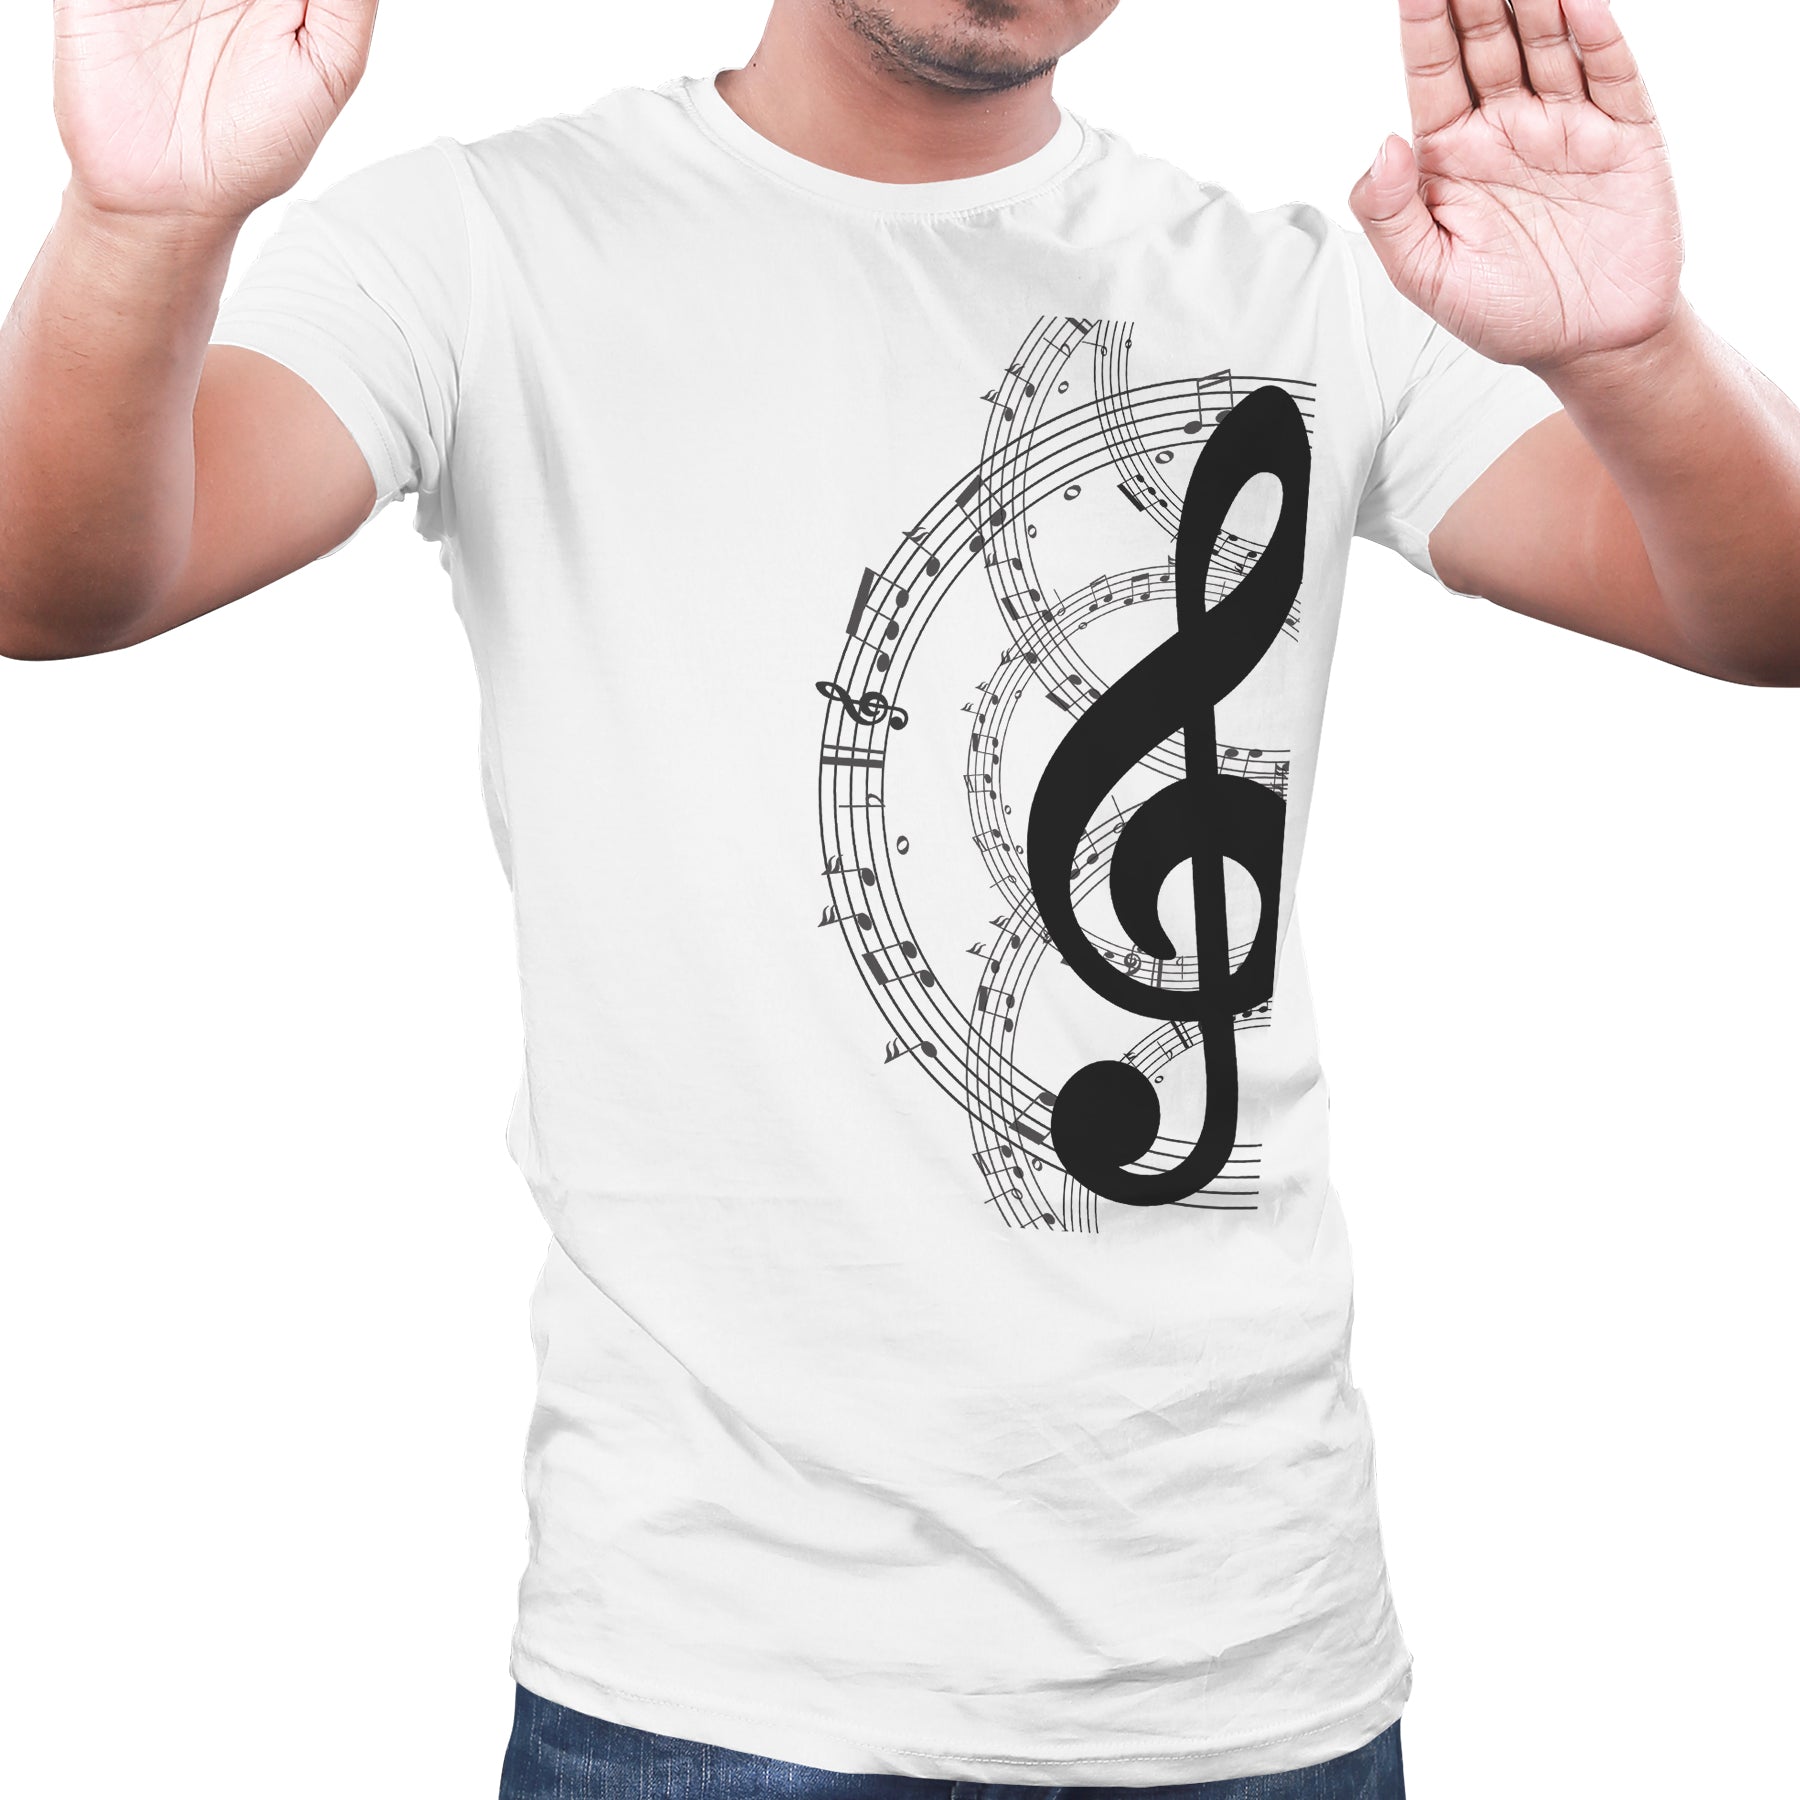 music lovers t shirts, Music themed tshirt, musician tshirts - White 10